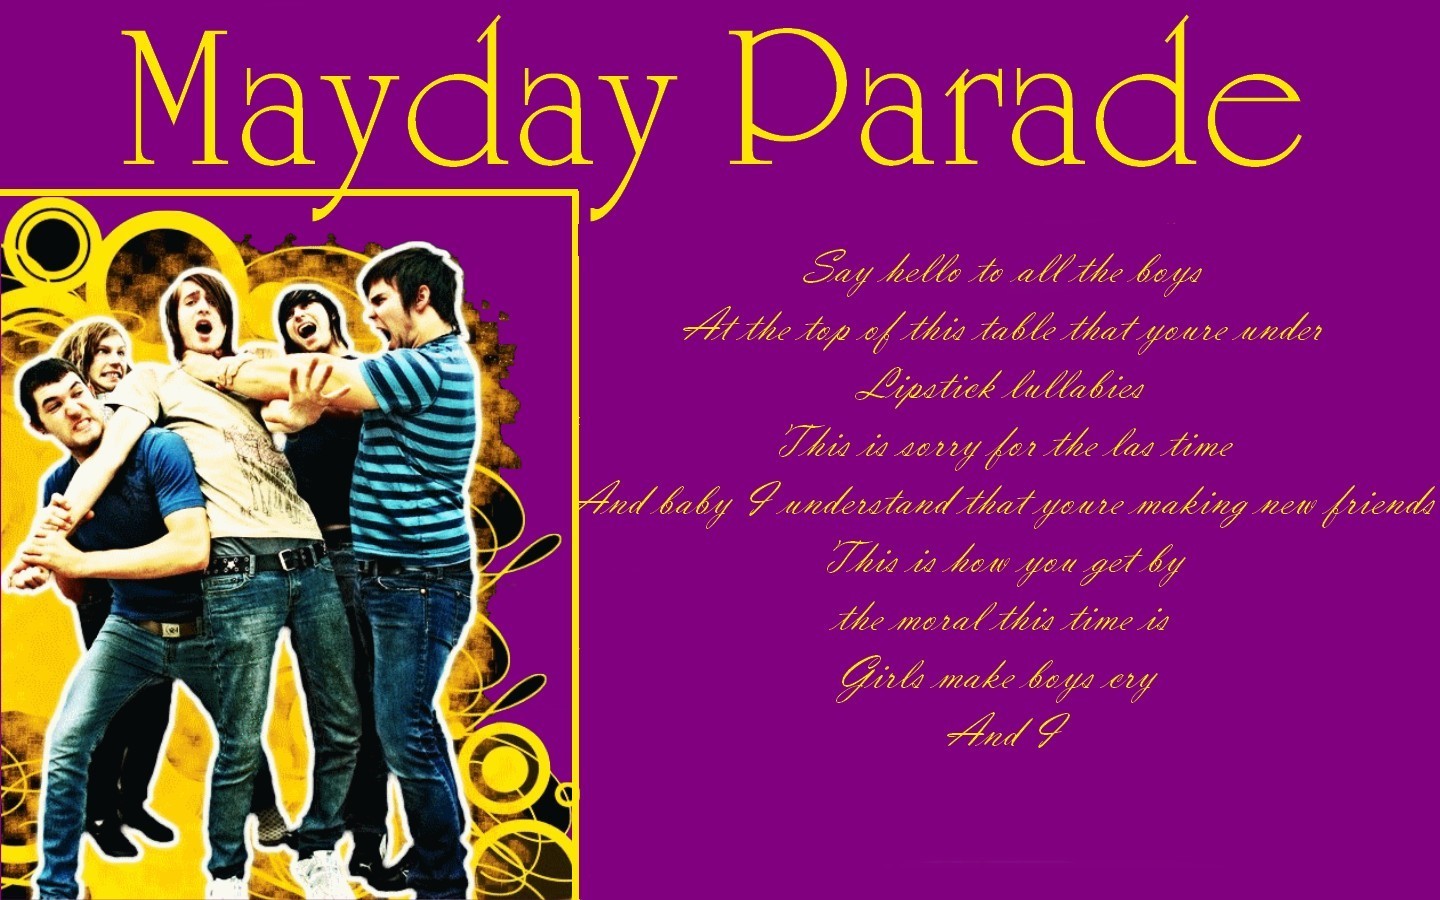 Mayday Parade - Mayday Parade Wallpaper 7443166 - Fanpop